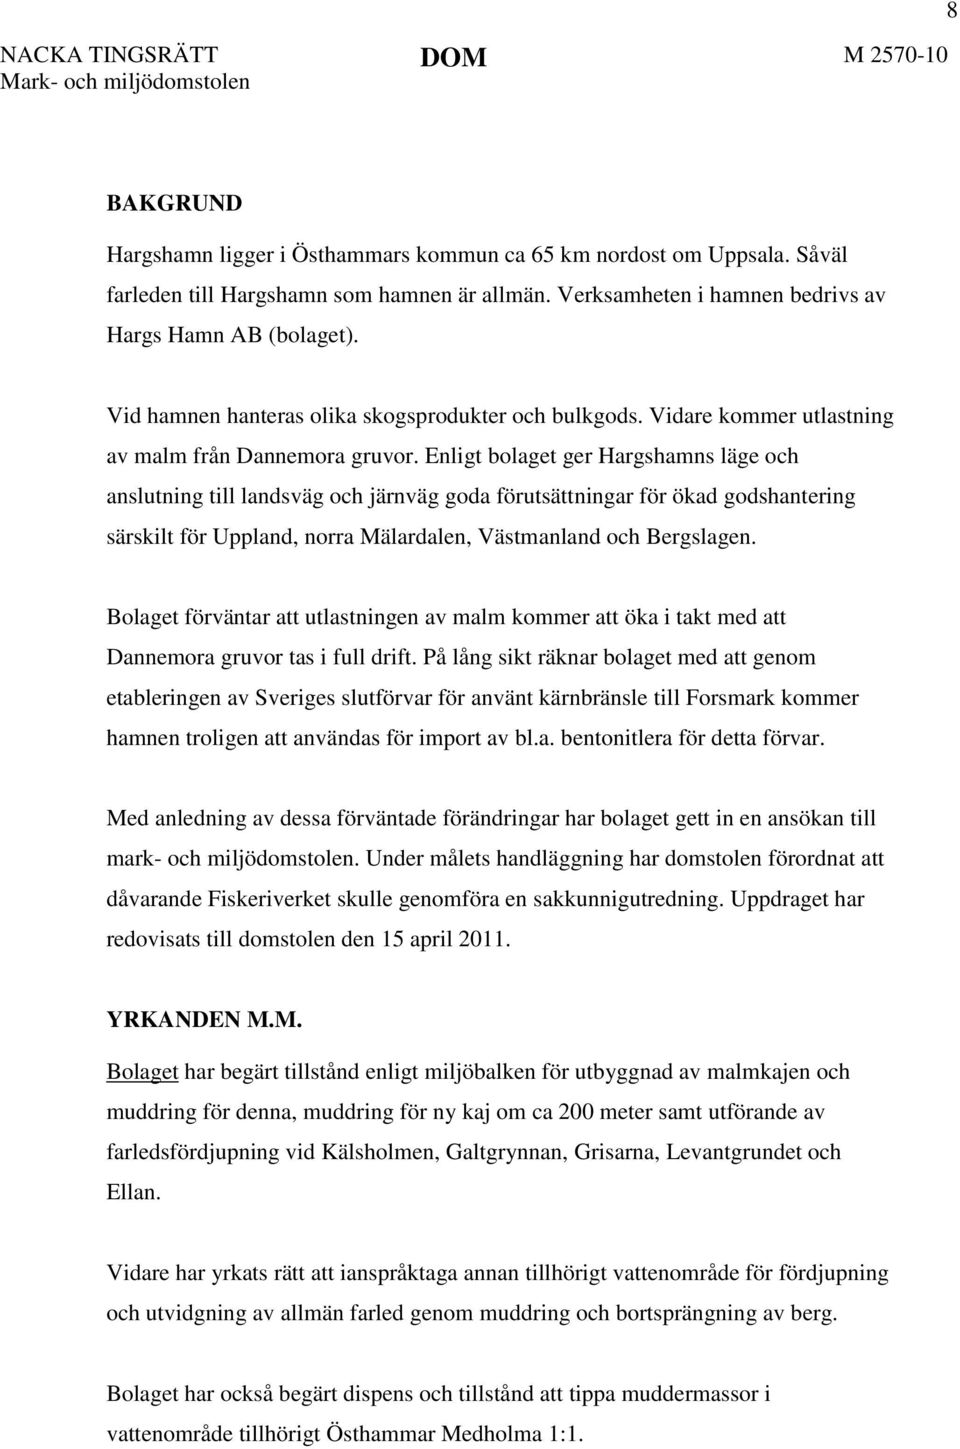 Enligt bolaget ger Hargshamns läge och anslutning till landsväg och järnväg goda förutsättningar för ökad godshantering särskilt för Uppland, norra Mälardalen, Västmanland och Bergslagen.